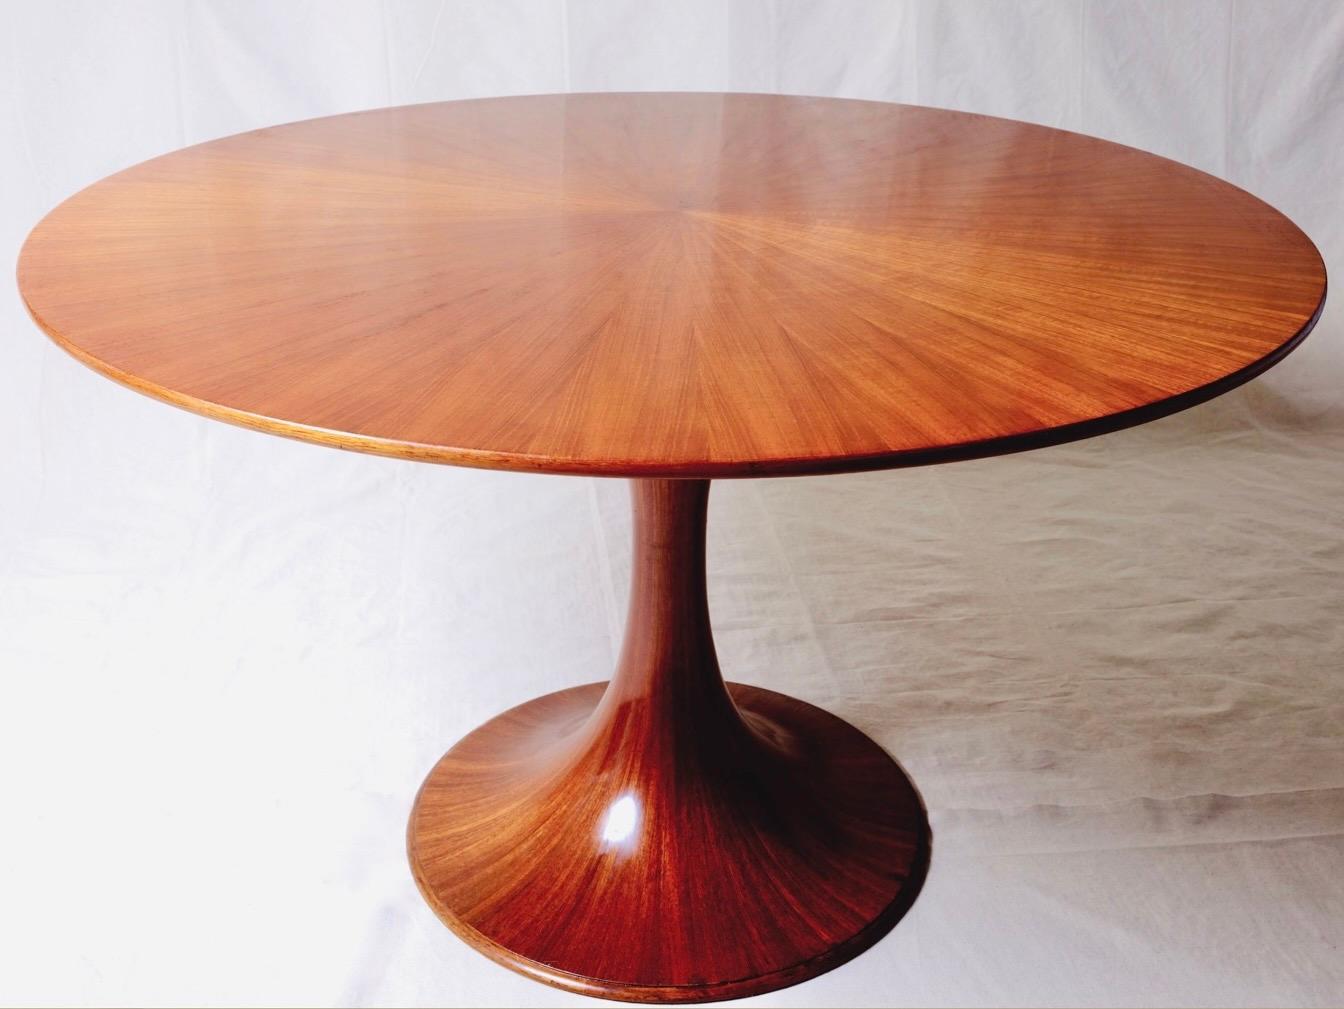 Table de salle à manger intemporelle et compacte conçue par Luigi Massoni pour Mobilia, Italie, années 1950.

Il s'agit de la version 